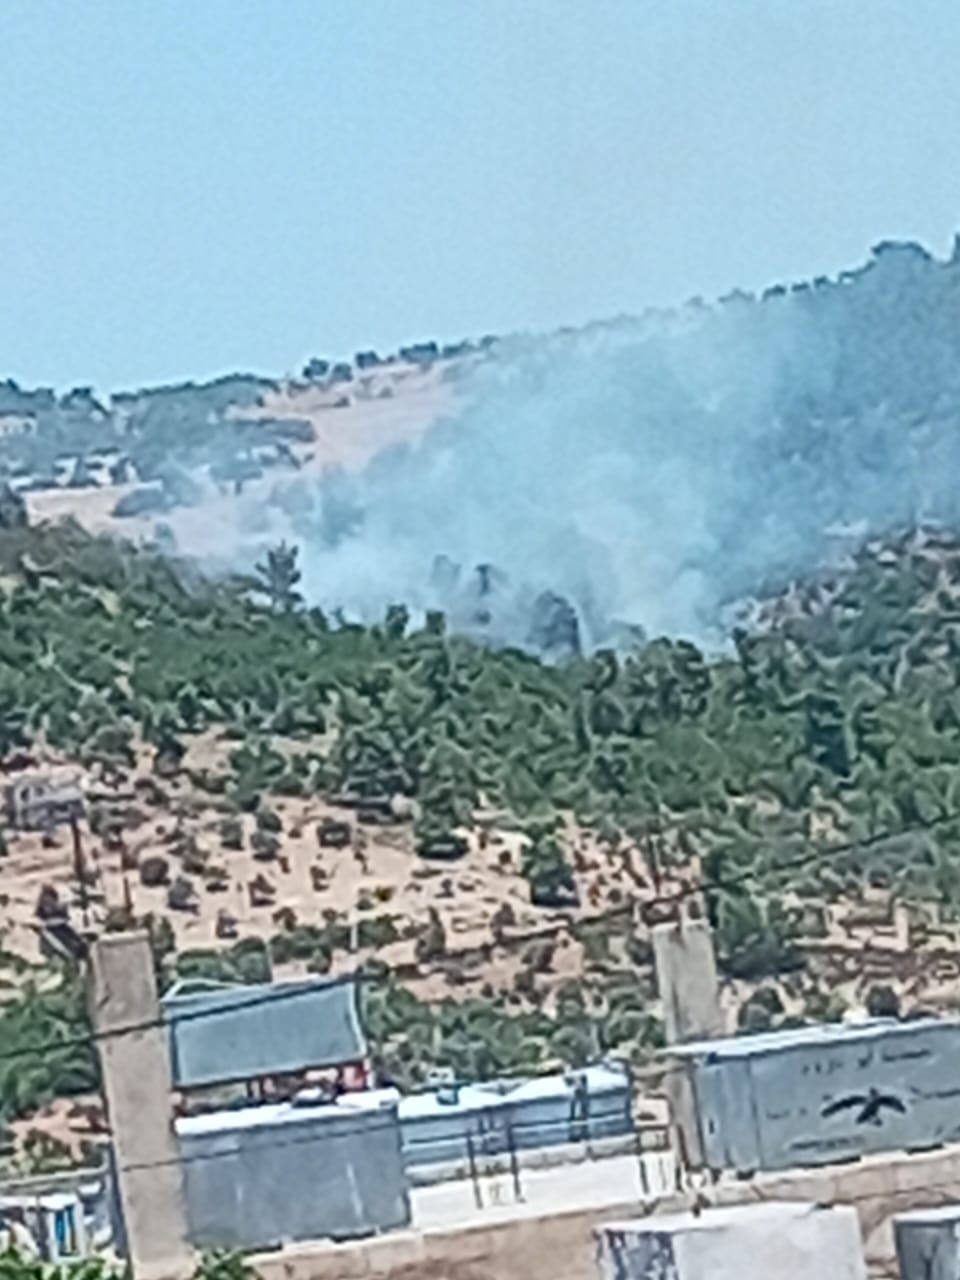 حريق ضخم في عجلون  ..  والدفاع المدني يستعين بالمروحيات لإخماده  ..  فيديو 